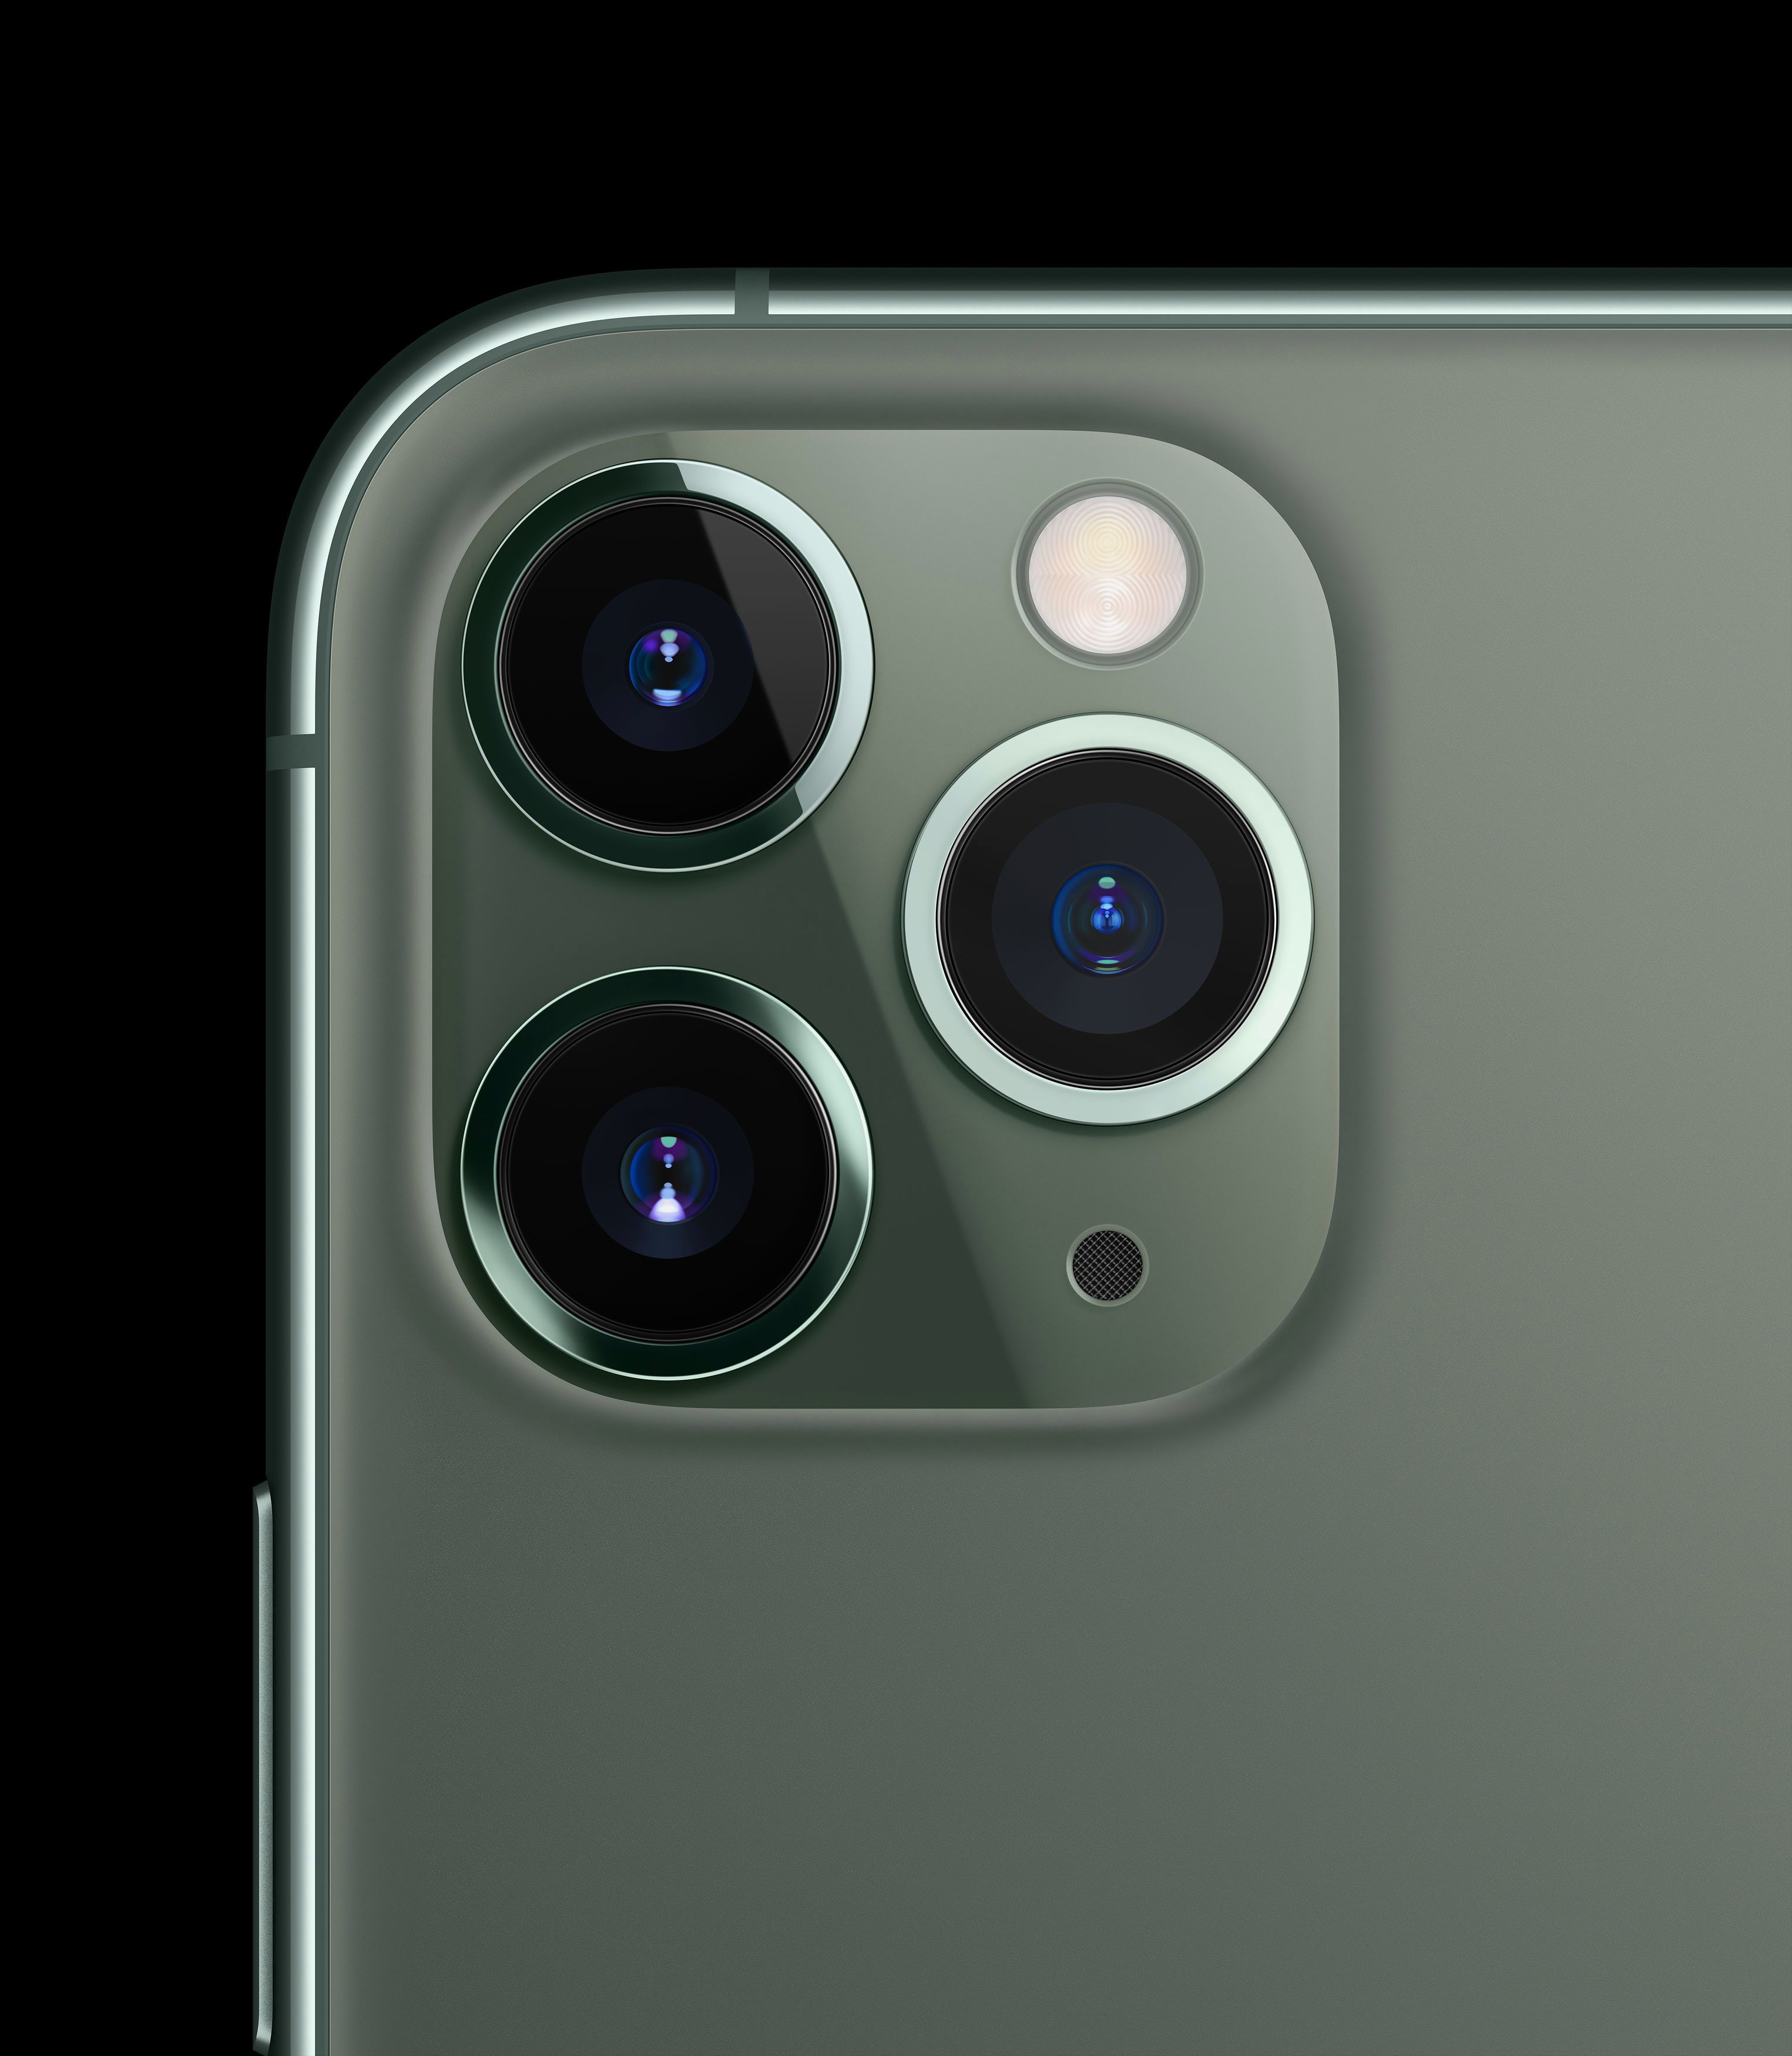  Desain iPhone 11 Pro memiliki kamera telefoto 12 megapiksel, dengan aperture f / 2.0 yang lebih besar, panjang fokus 52mm dan OIS juga